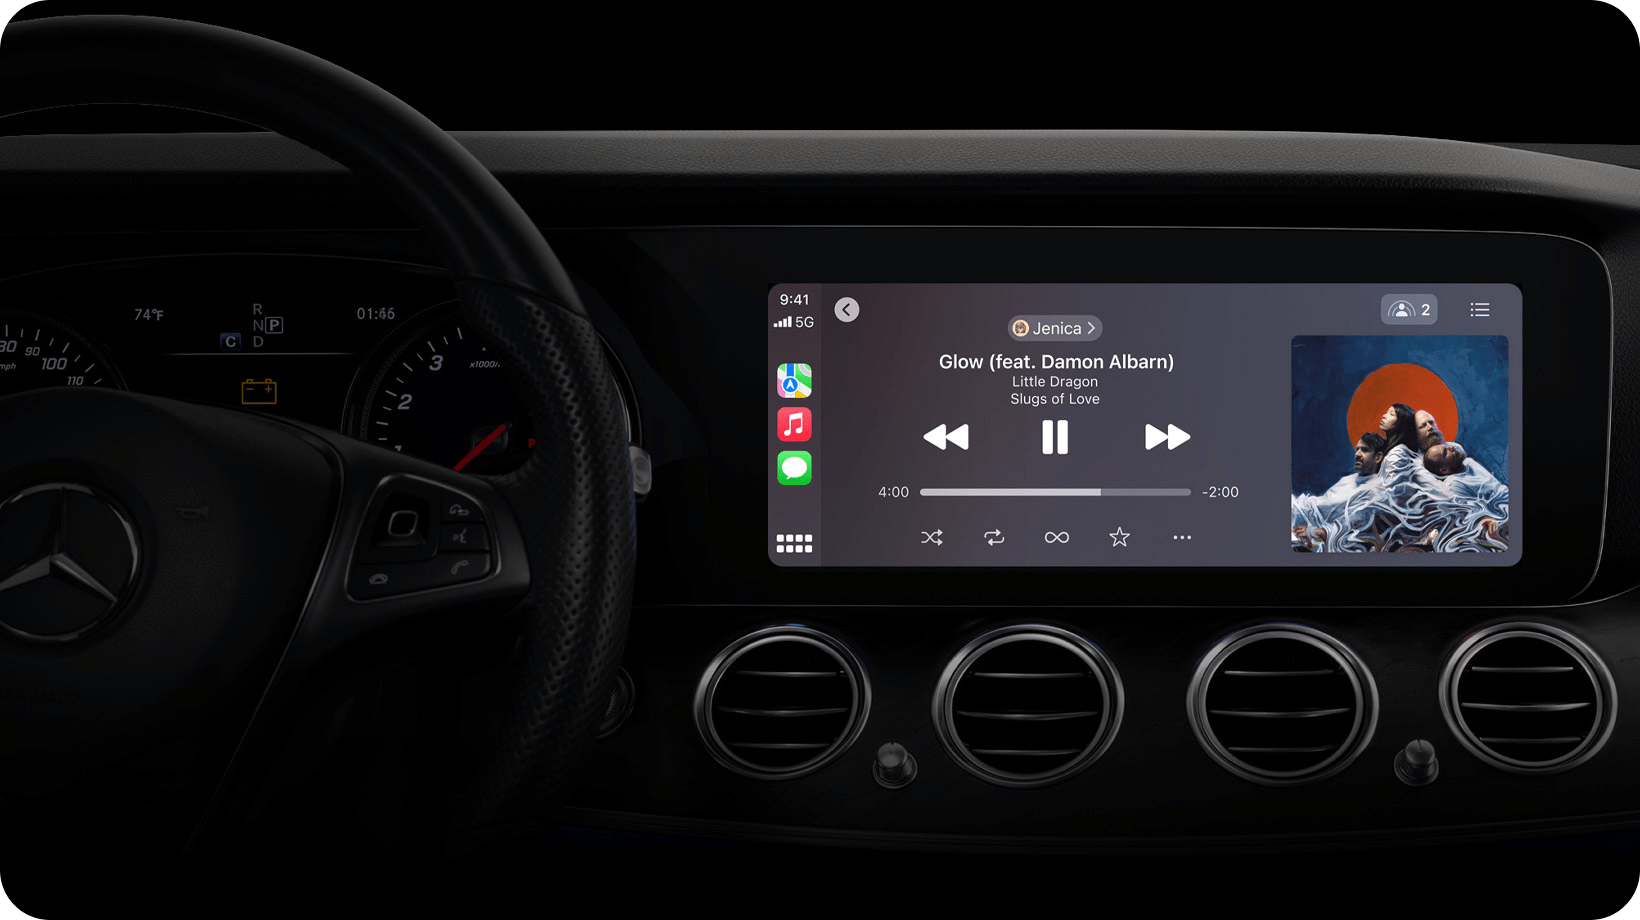 اگر خودروی شما از Car Play پشتیبانی می کند، با خرید اپل موزیک دنیای موسیقی روی خودرو شما قرار می گیرد. فقط کافیه از دستیار سیری اپل بخواهید موزیک مورد علاقه شما را پخش کند.